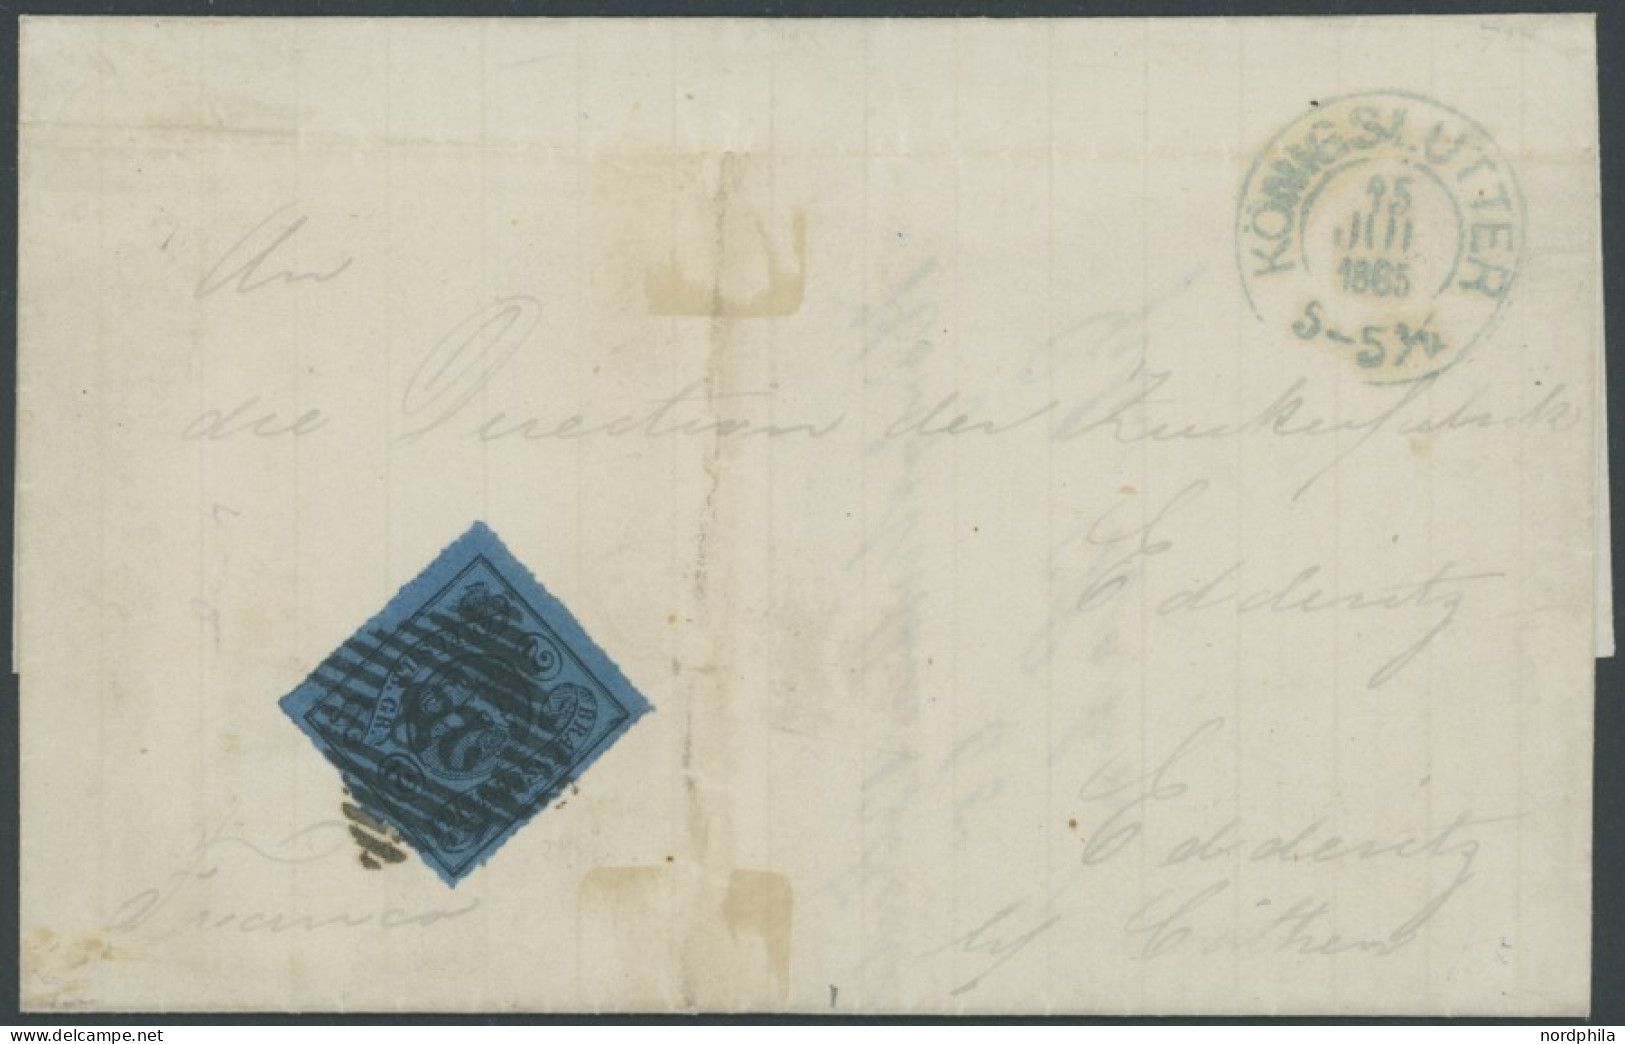 BRAUNSCHWEIG 15A BRIEF, 1865, 2 Sgr. Blau, Prachtstück Mit Nummernstempel 28 Auf Brief Aus KÖNIGSLUTTER - Brunswick